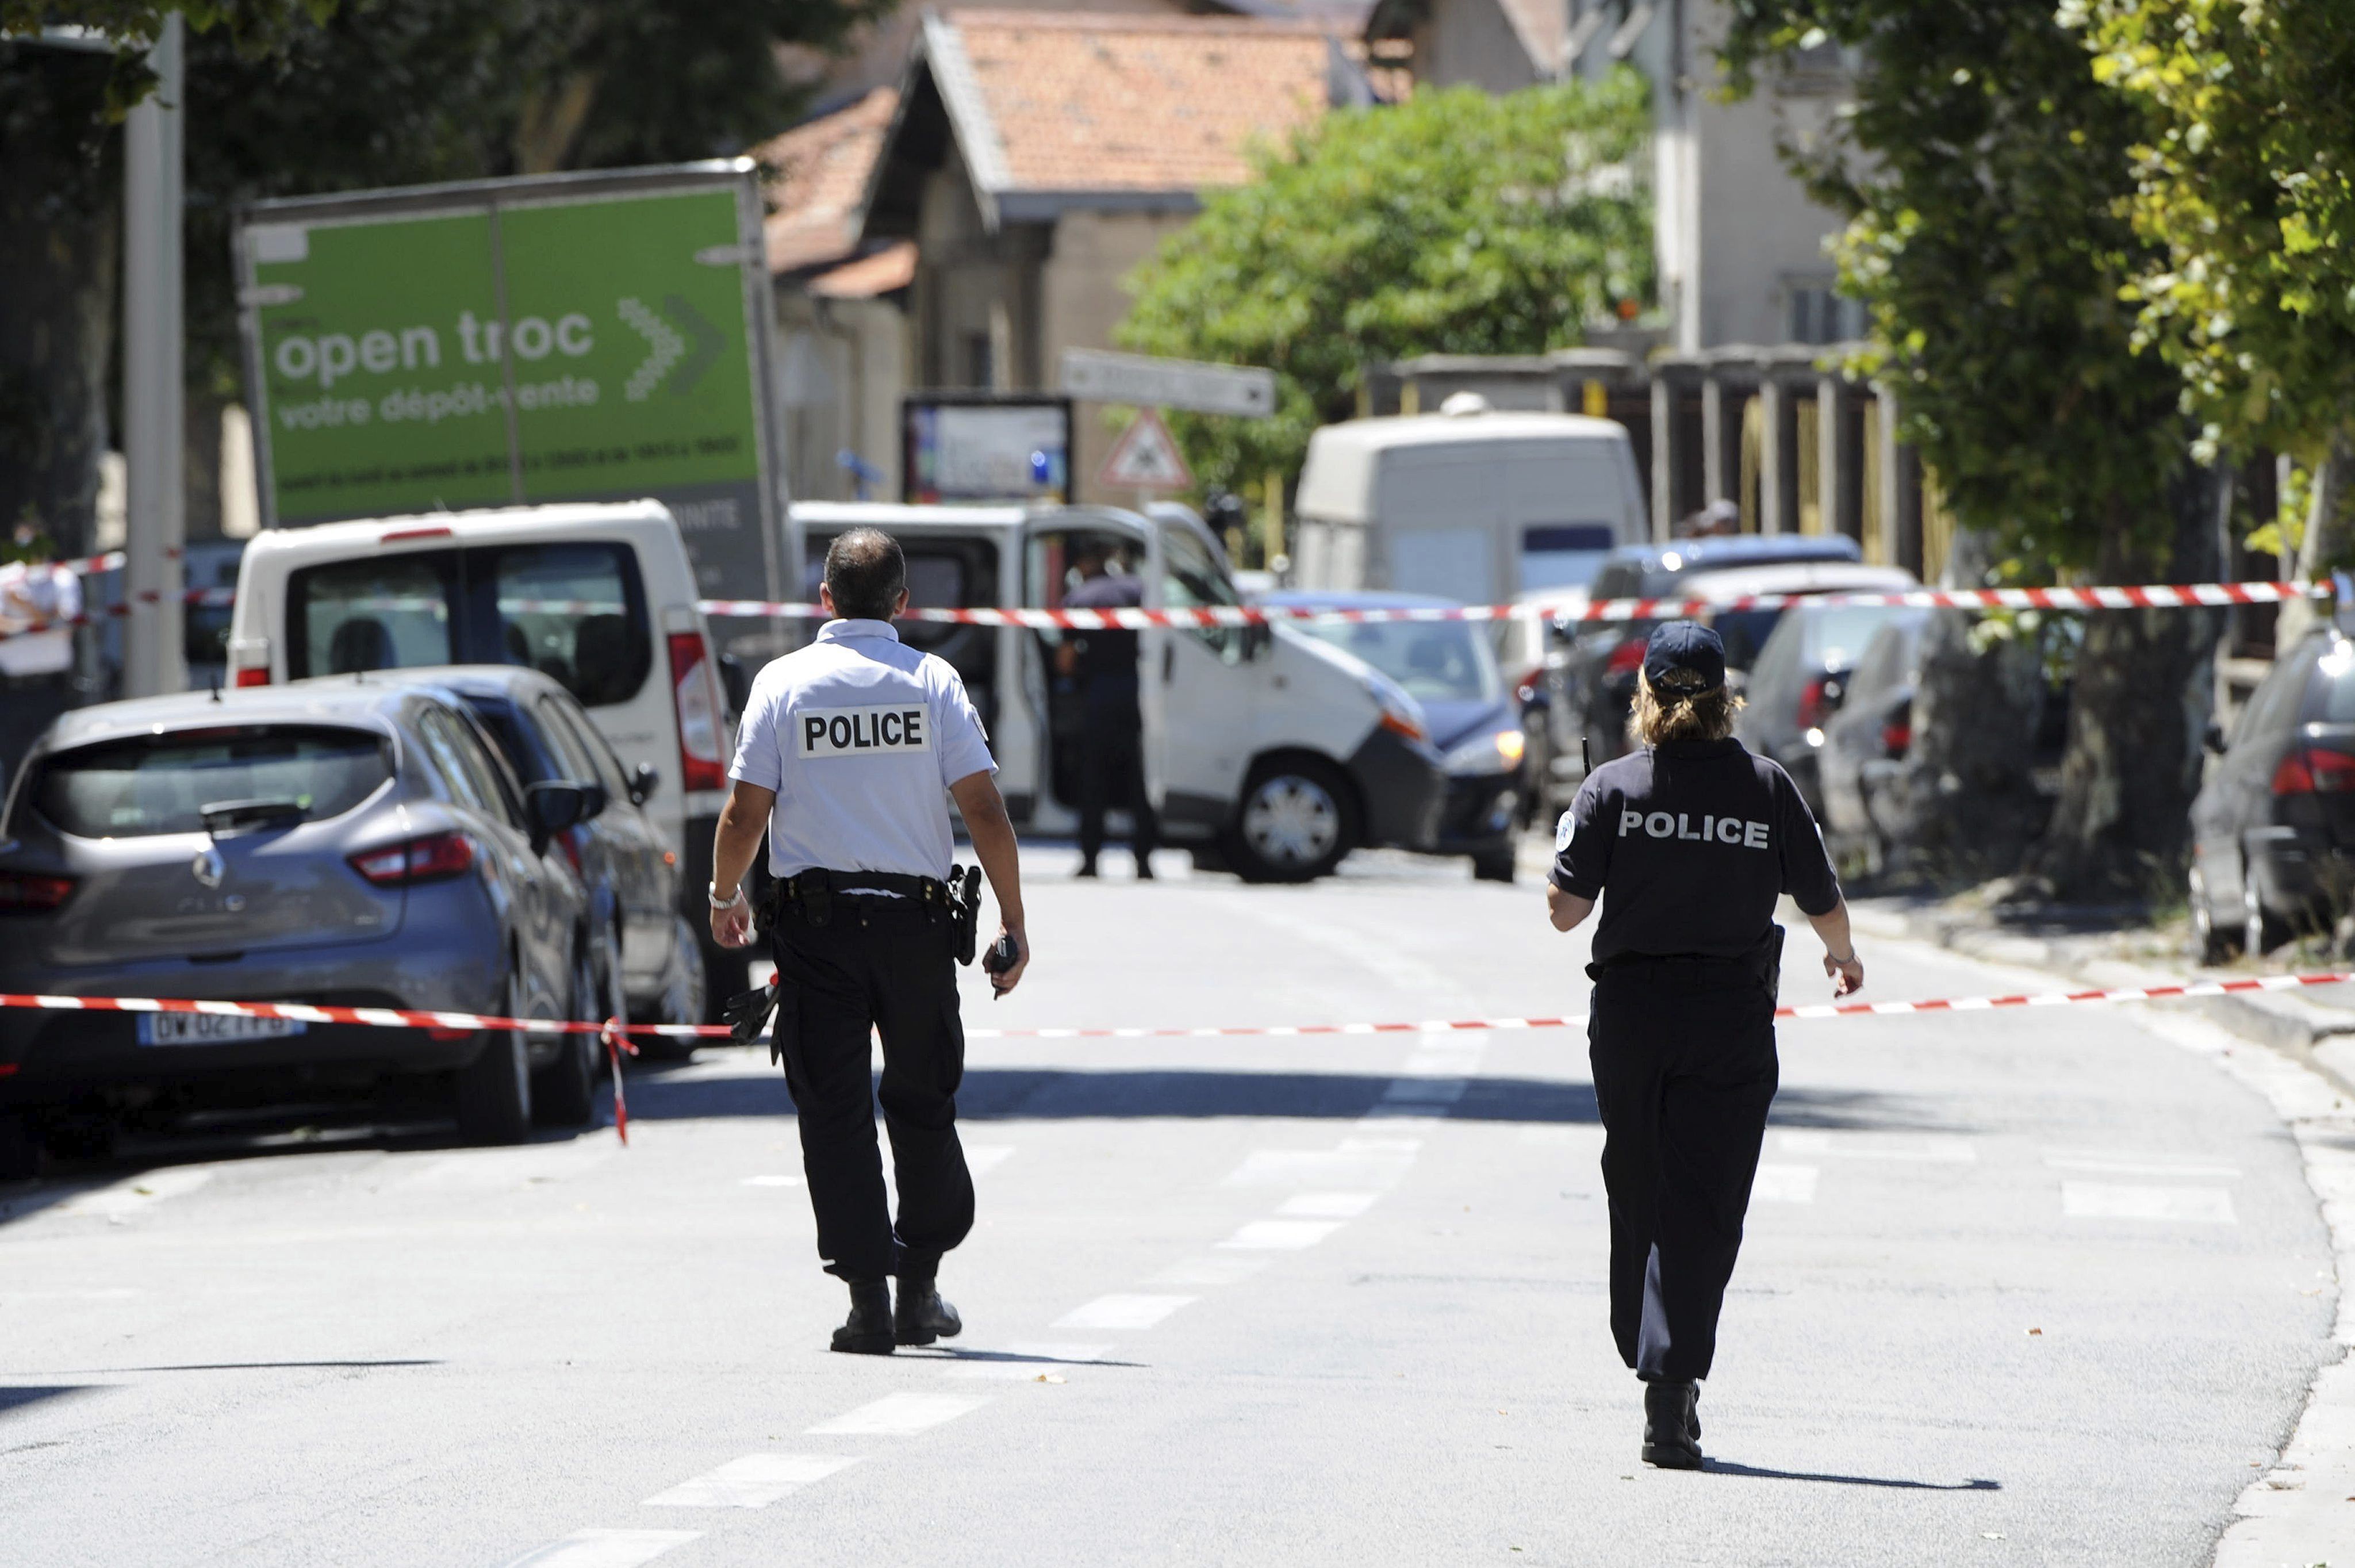 El Estado Islámico reivindica el atentado de Niza